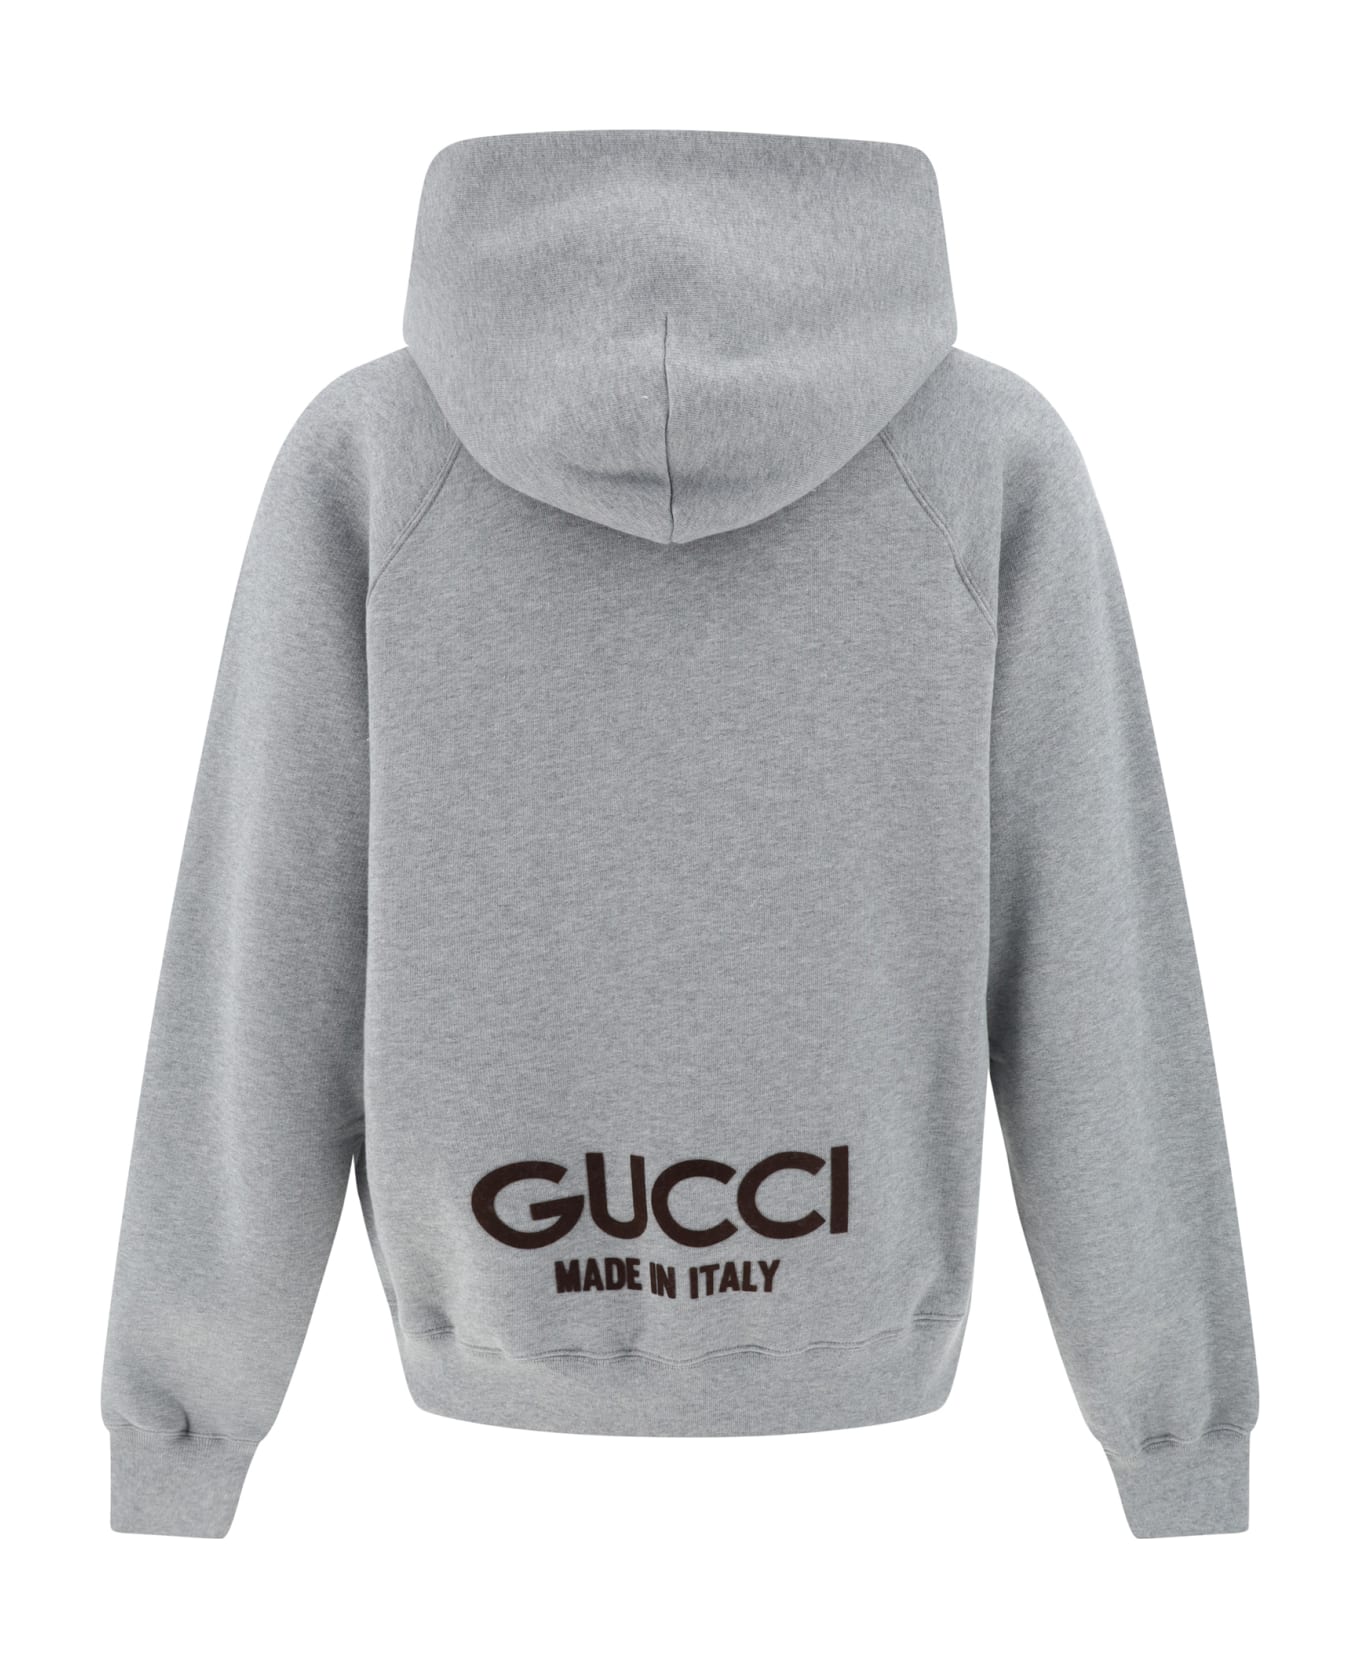 Gucci Hoodie - Grey Melange